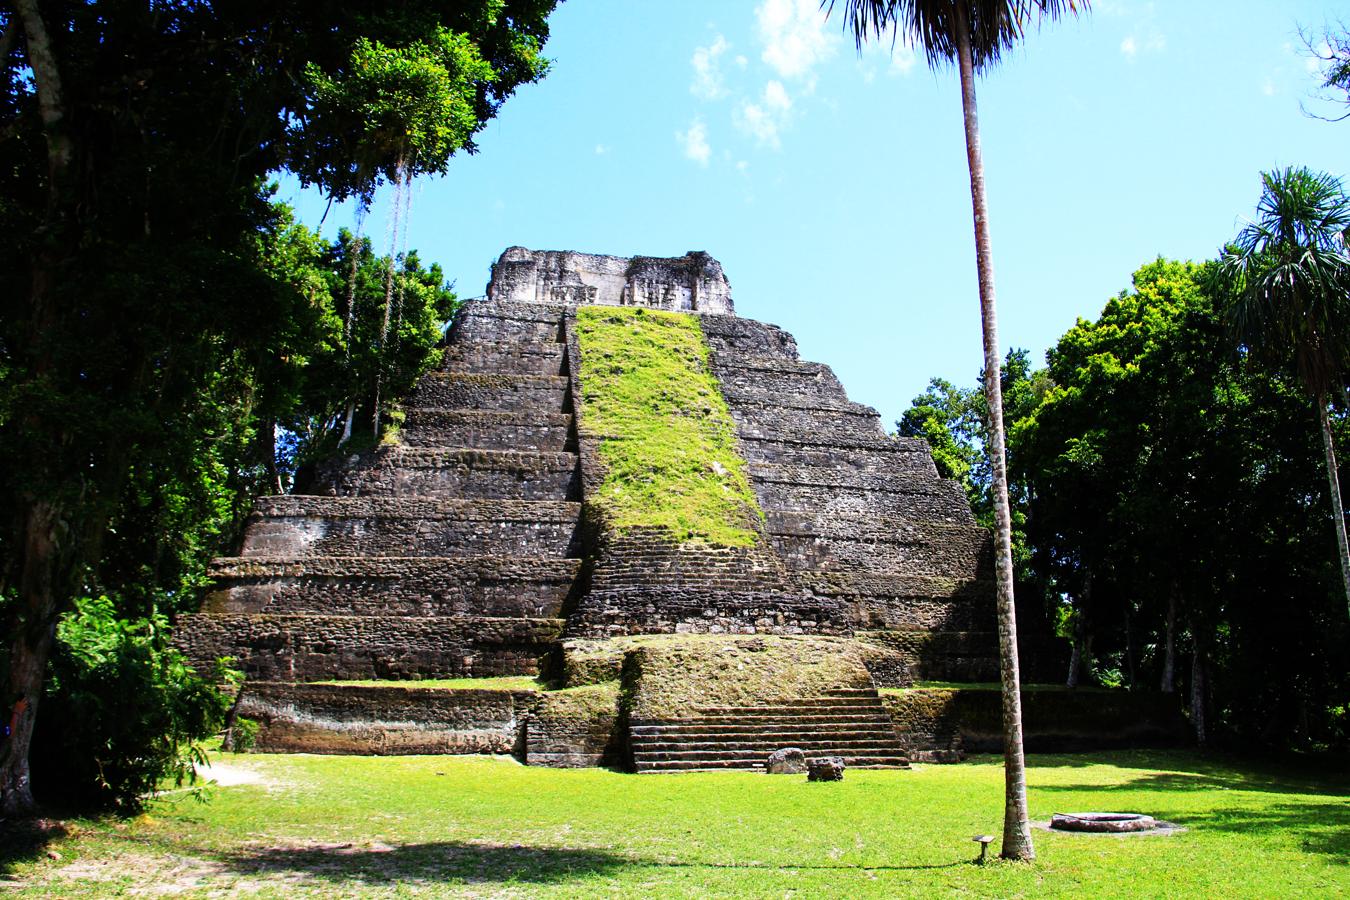 Guatemala más allá de Tikal. Además de Tikal, el viajero puede maravillarse explorando sitios y parques arqueológicos como El Mirador – Río Azul, Uaxactun, Yaxha-Nahum-Naranjo (en la foto), Quirigua, Tak´alik AbÁj, Iximche en Chimaltenango, Zaculeu en Huehuetenango y la Danta, la pirámide más grande del mundo antiguo por sus dimensiones de ancho y alto. Estas impresionantes edificiaciones yacen entre la selva guatemalteca del Petén.